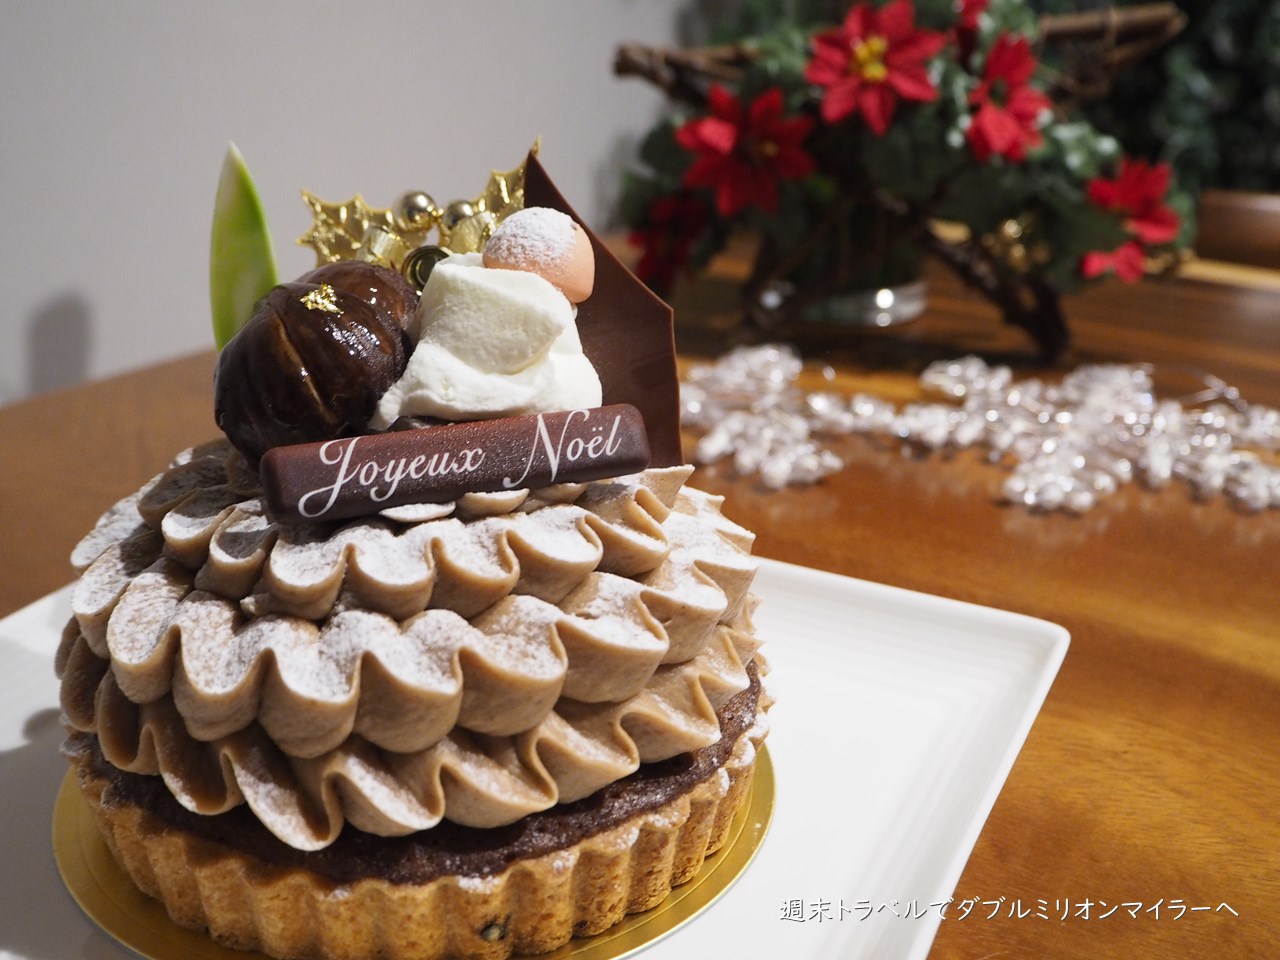 年クリスマスケーキは 新宿高島屋限定のル ジャルダンブルー モンブランノエル